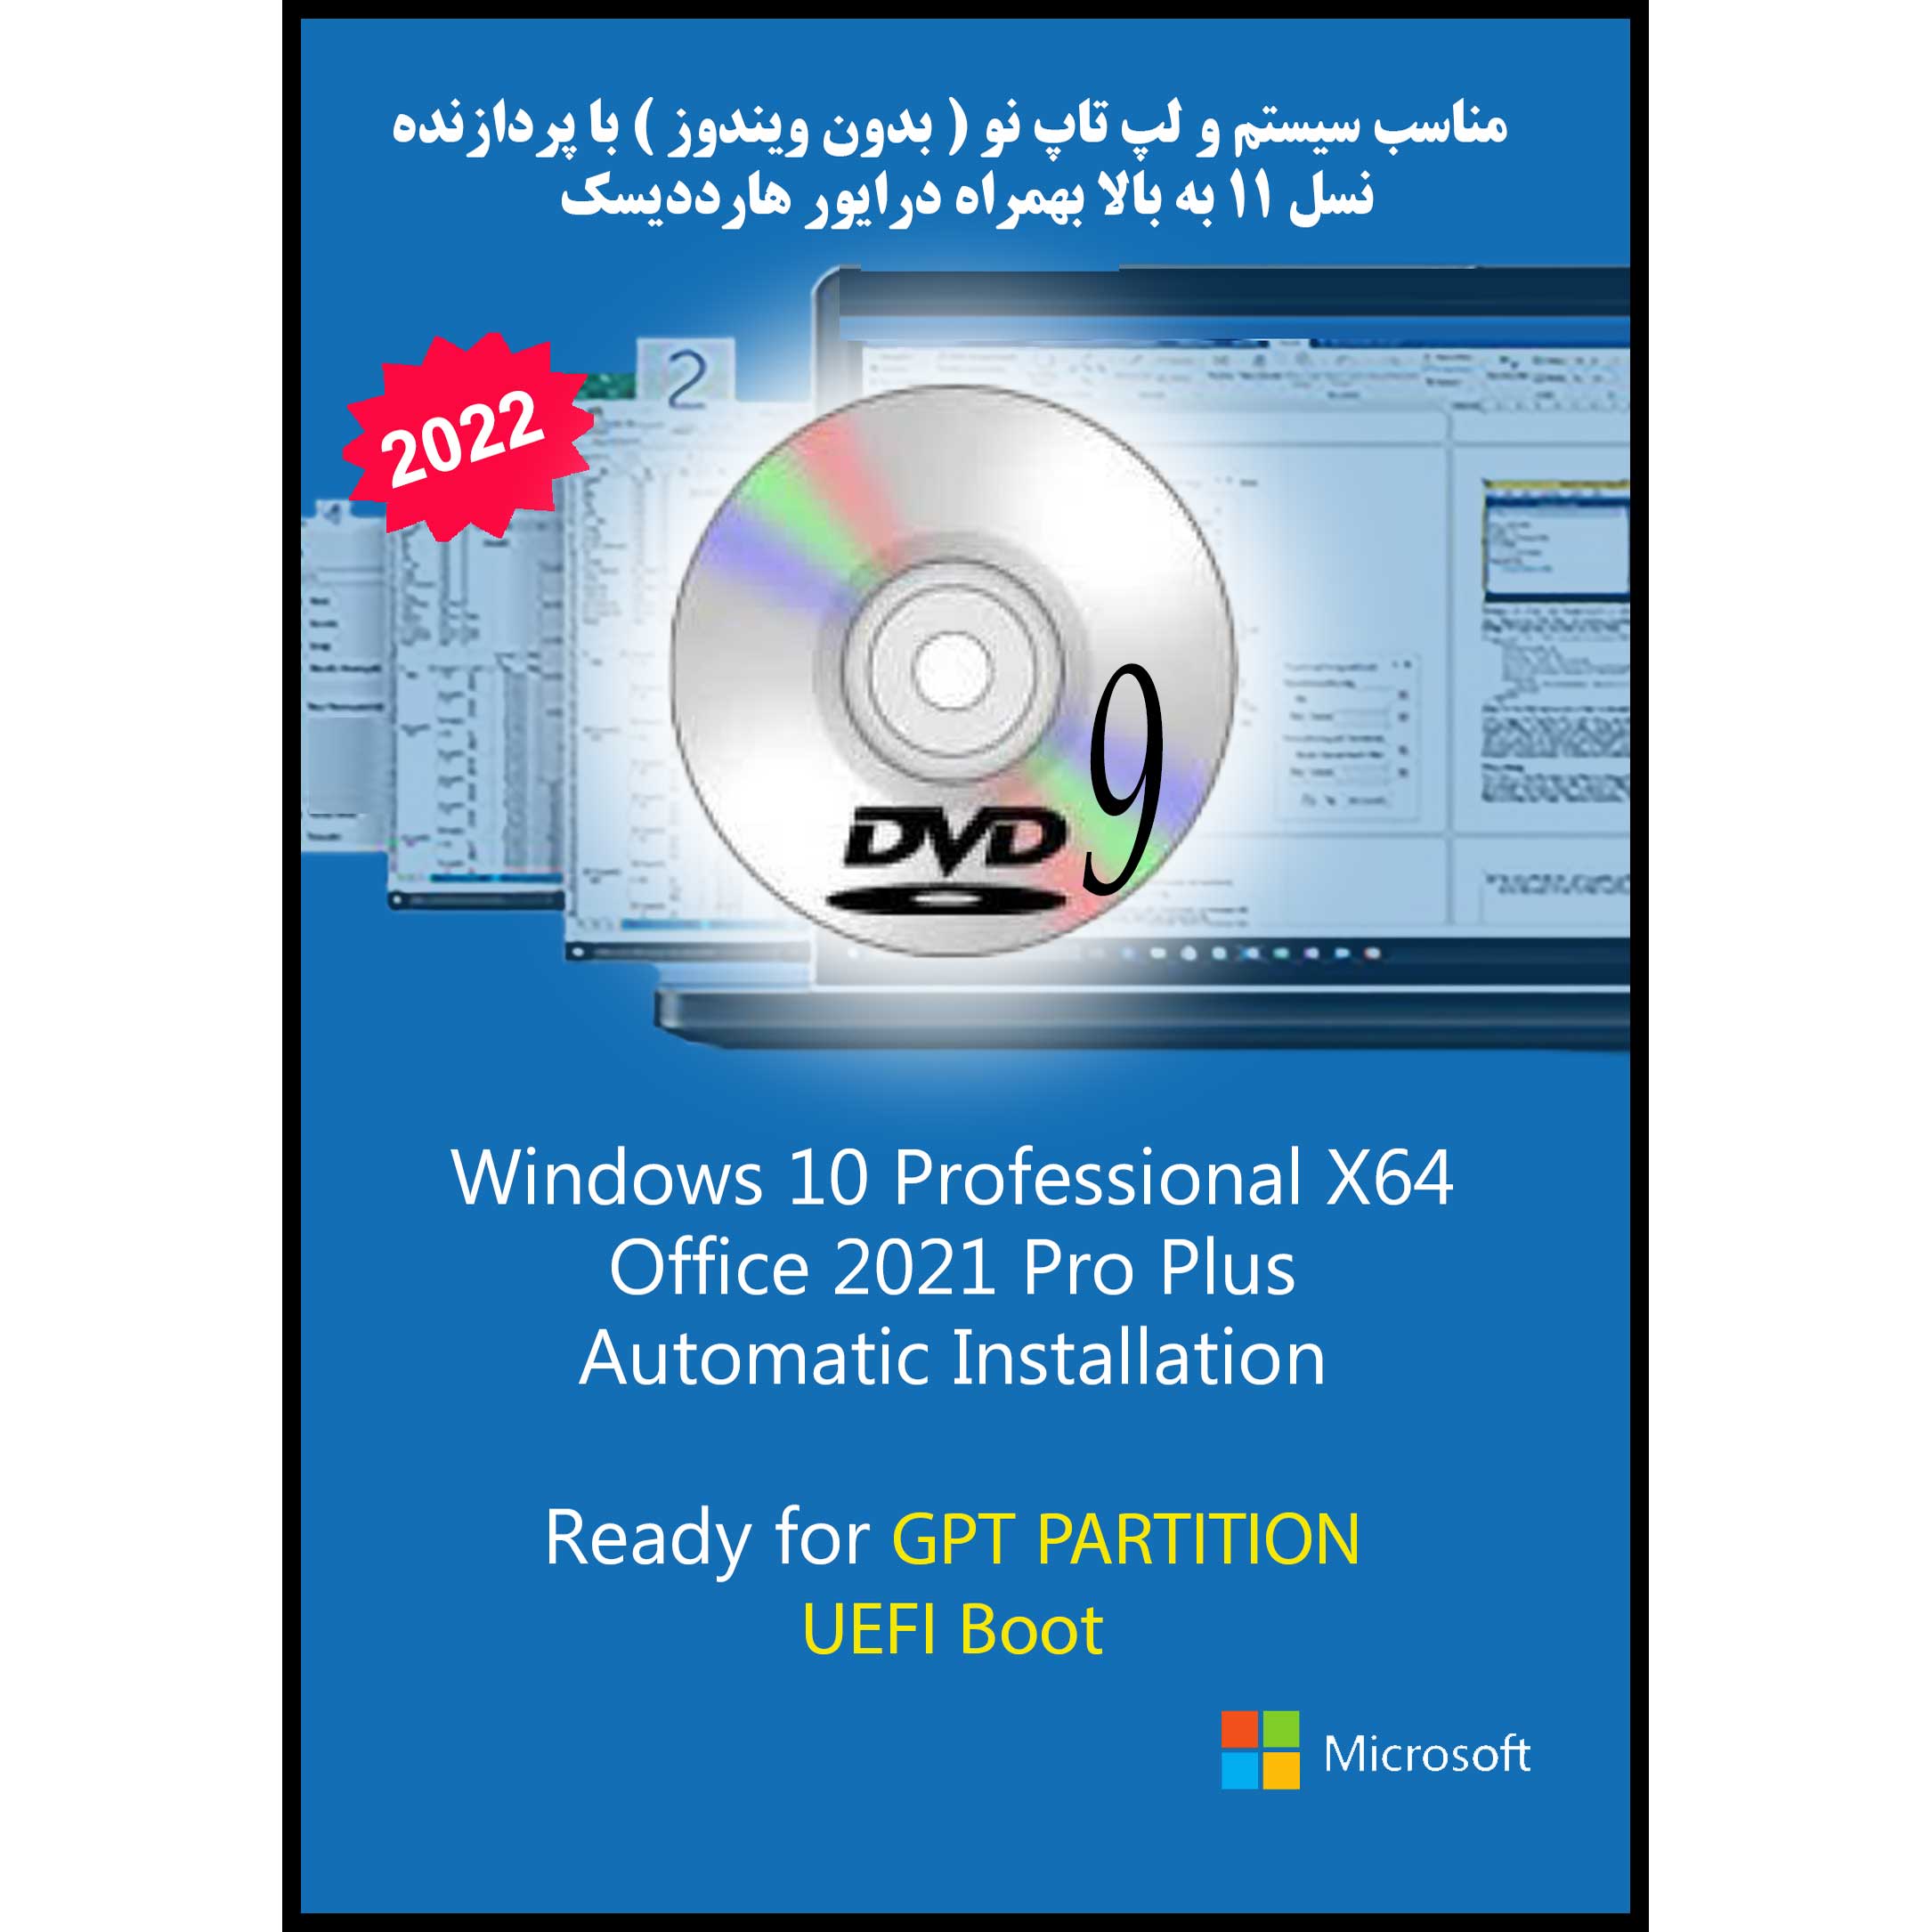 سیستم عامل Windows 10 Pro UEFI - IRST Driver - Office 2021 Pro Plus نشر مایکروسافت